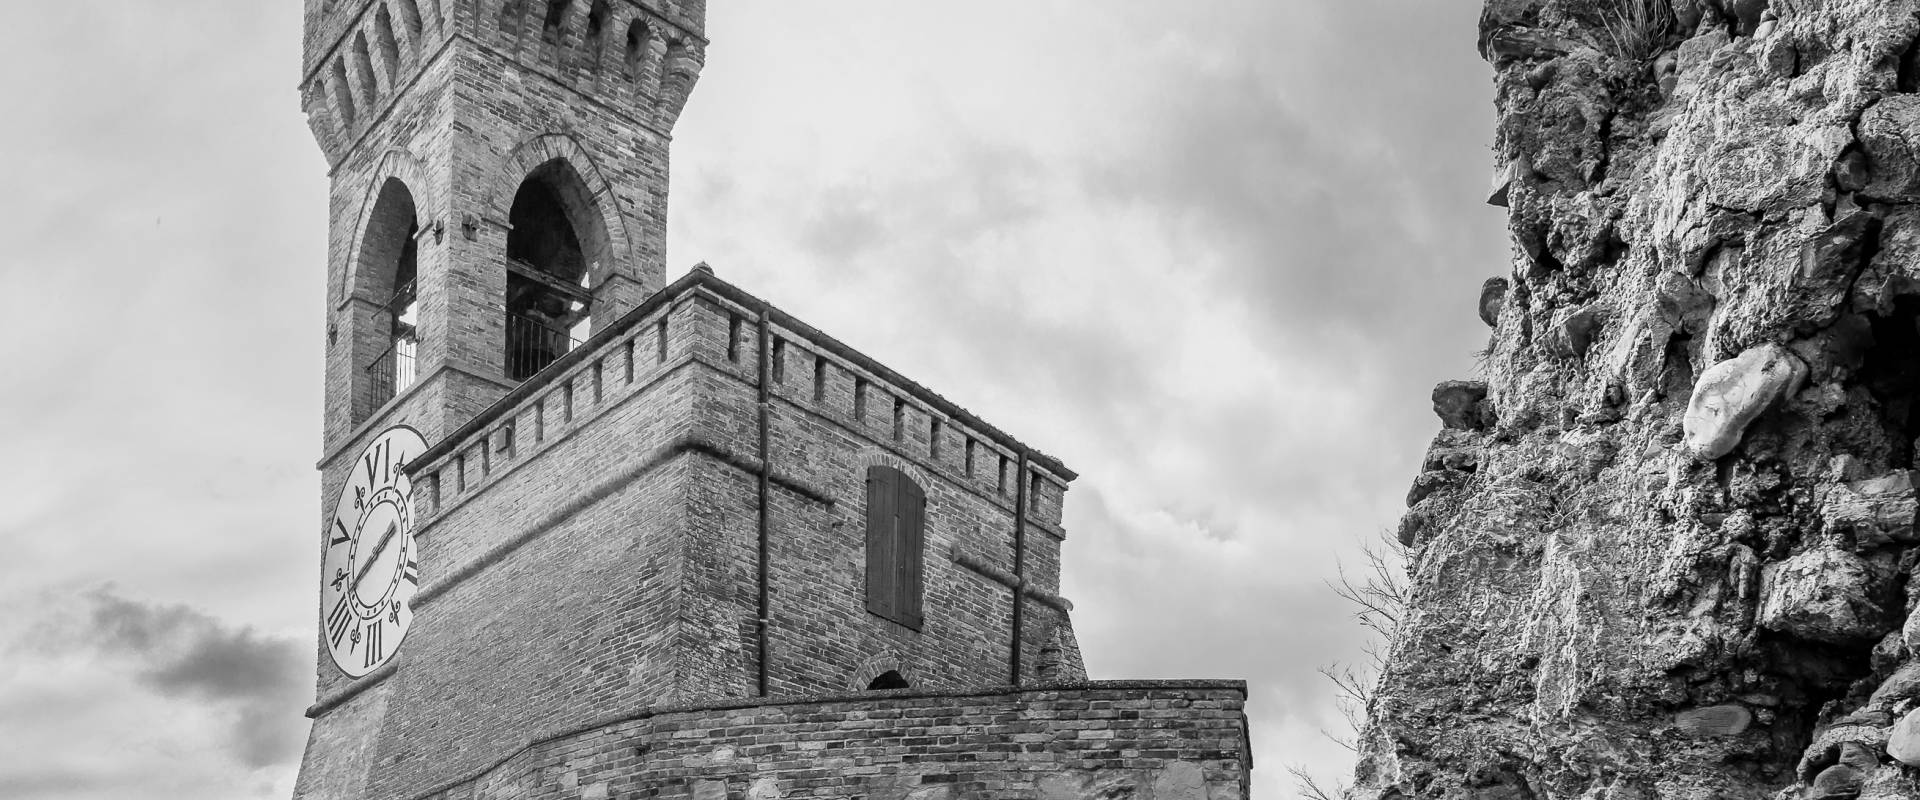 Torre dell'orologio Brisighella foto di Vanni Lazzari